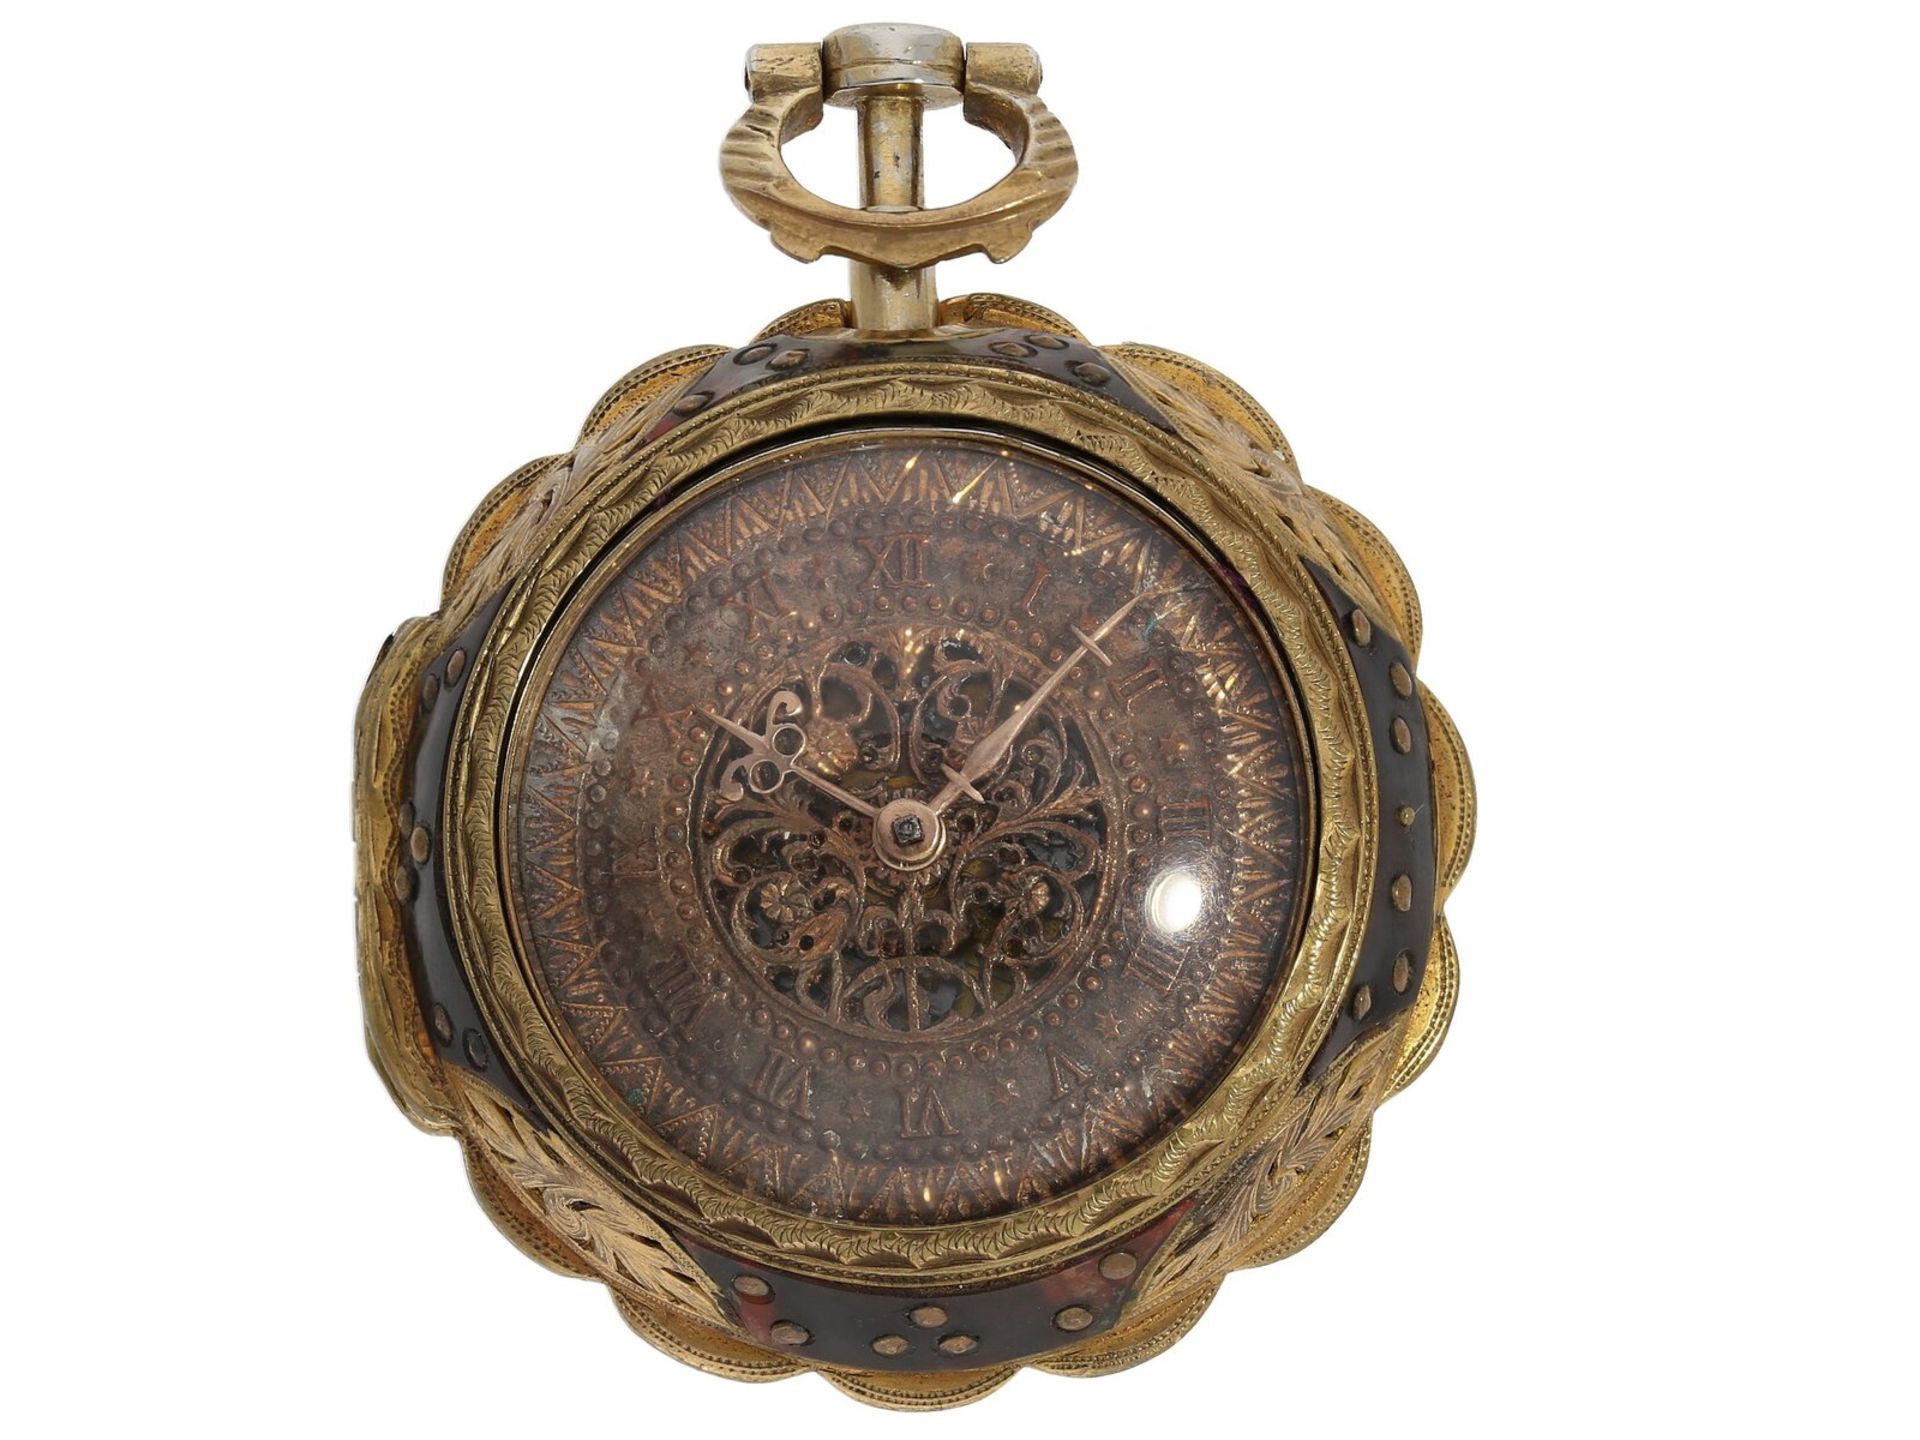 Taschenuhr: ungewöhnliche Spindeluhr mit Repetition auf Glocke, signiert Markwick Markham London, ca